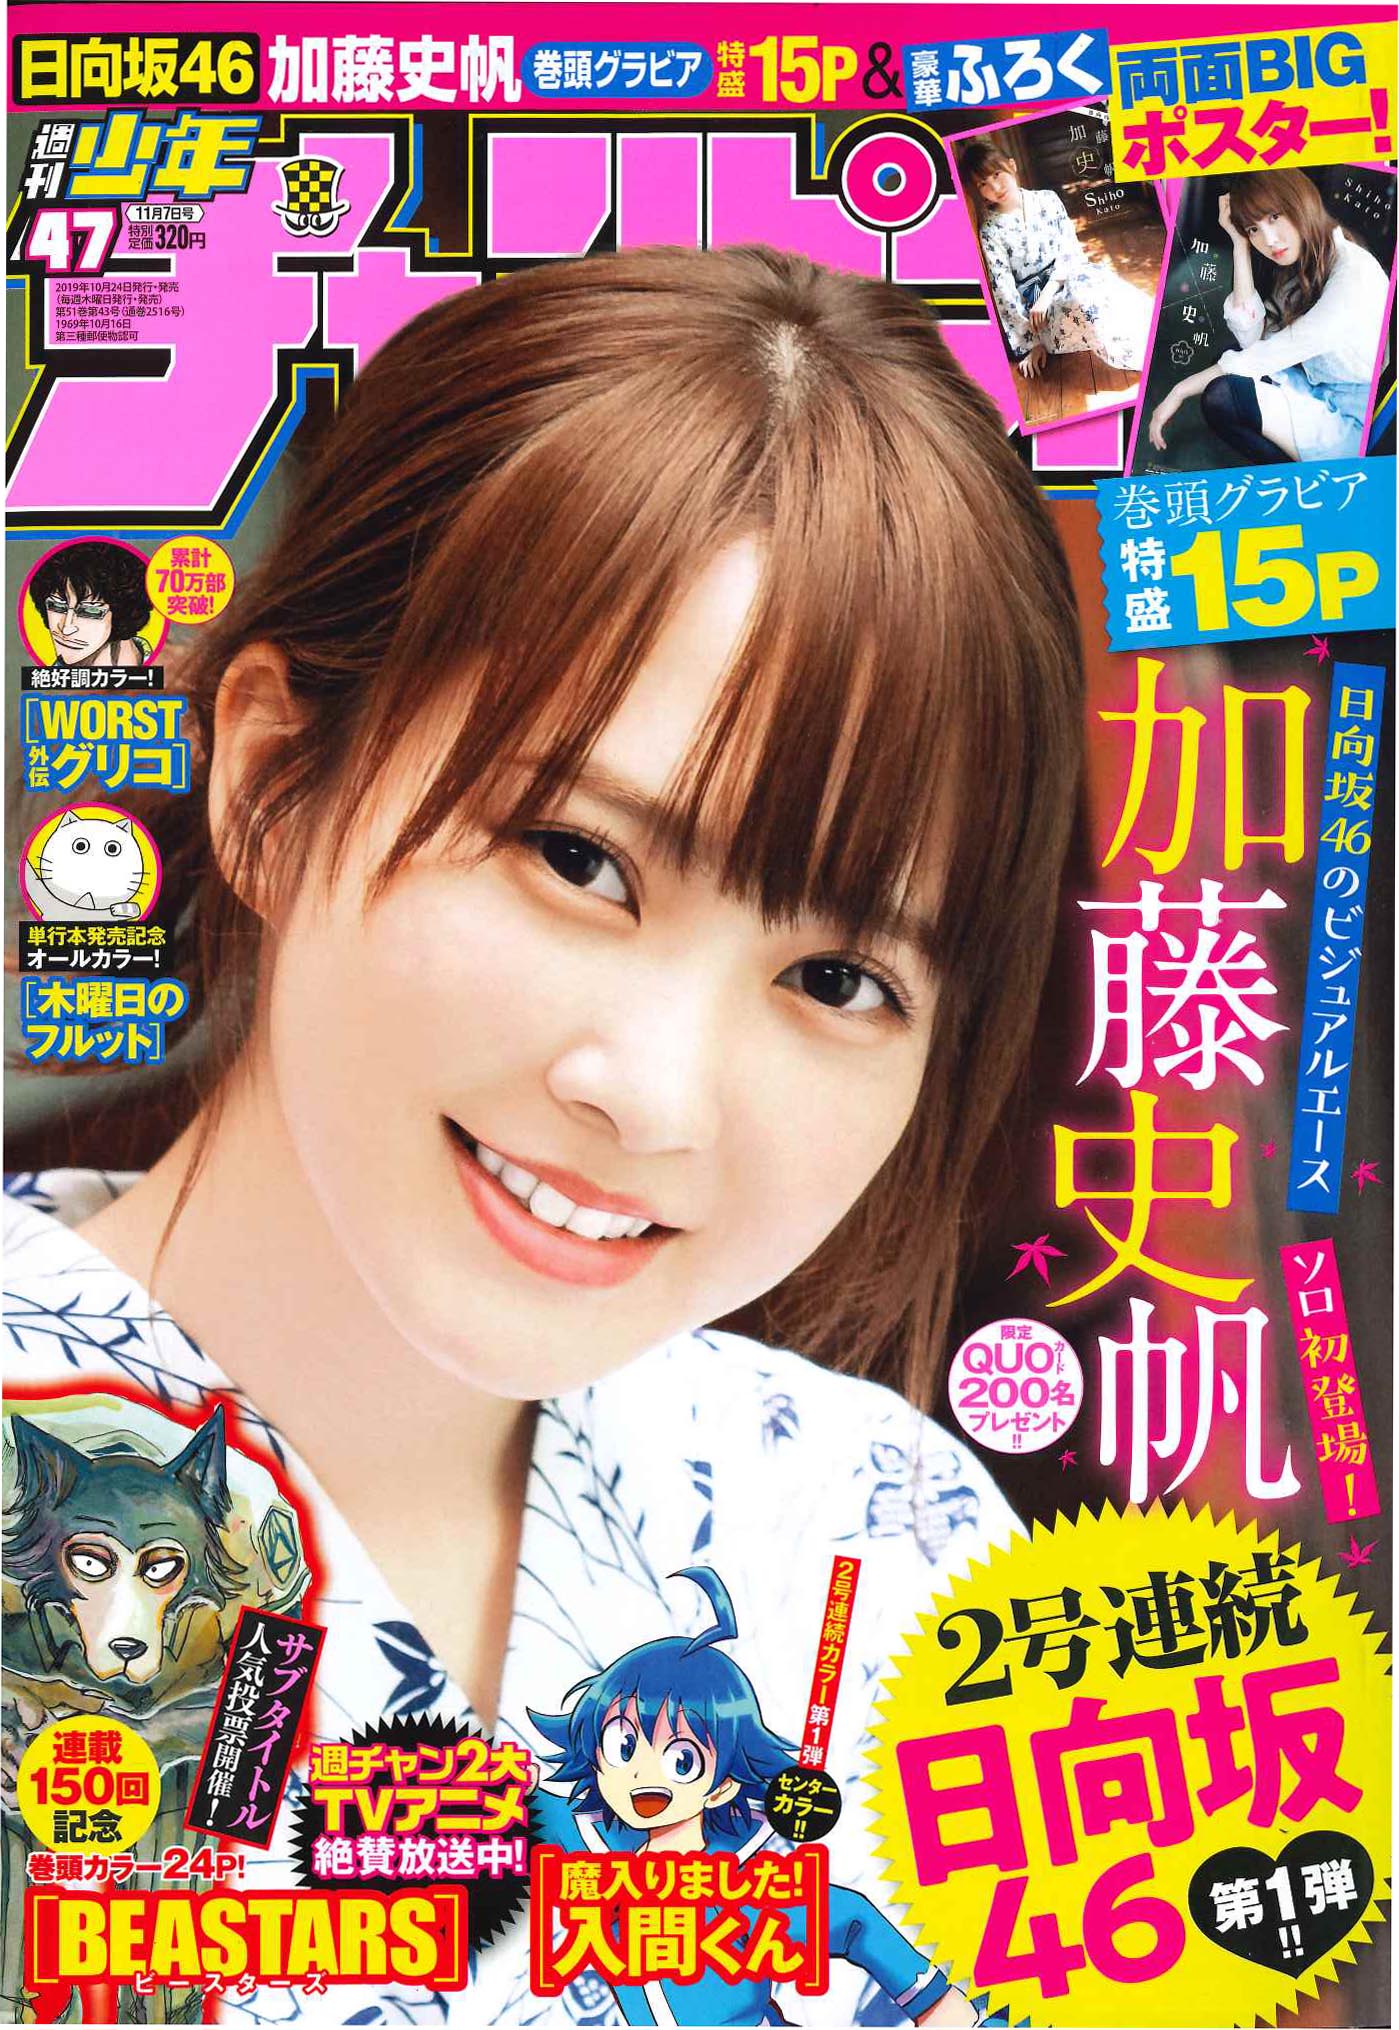 日向坂46のビジュアルエース・加藤史帆、「週刊少年チャンピオン」の表紙